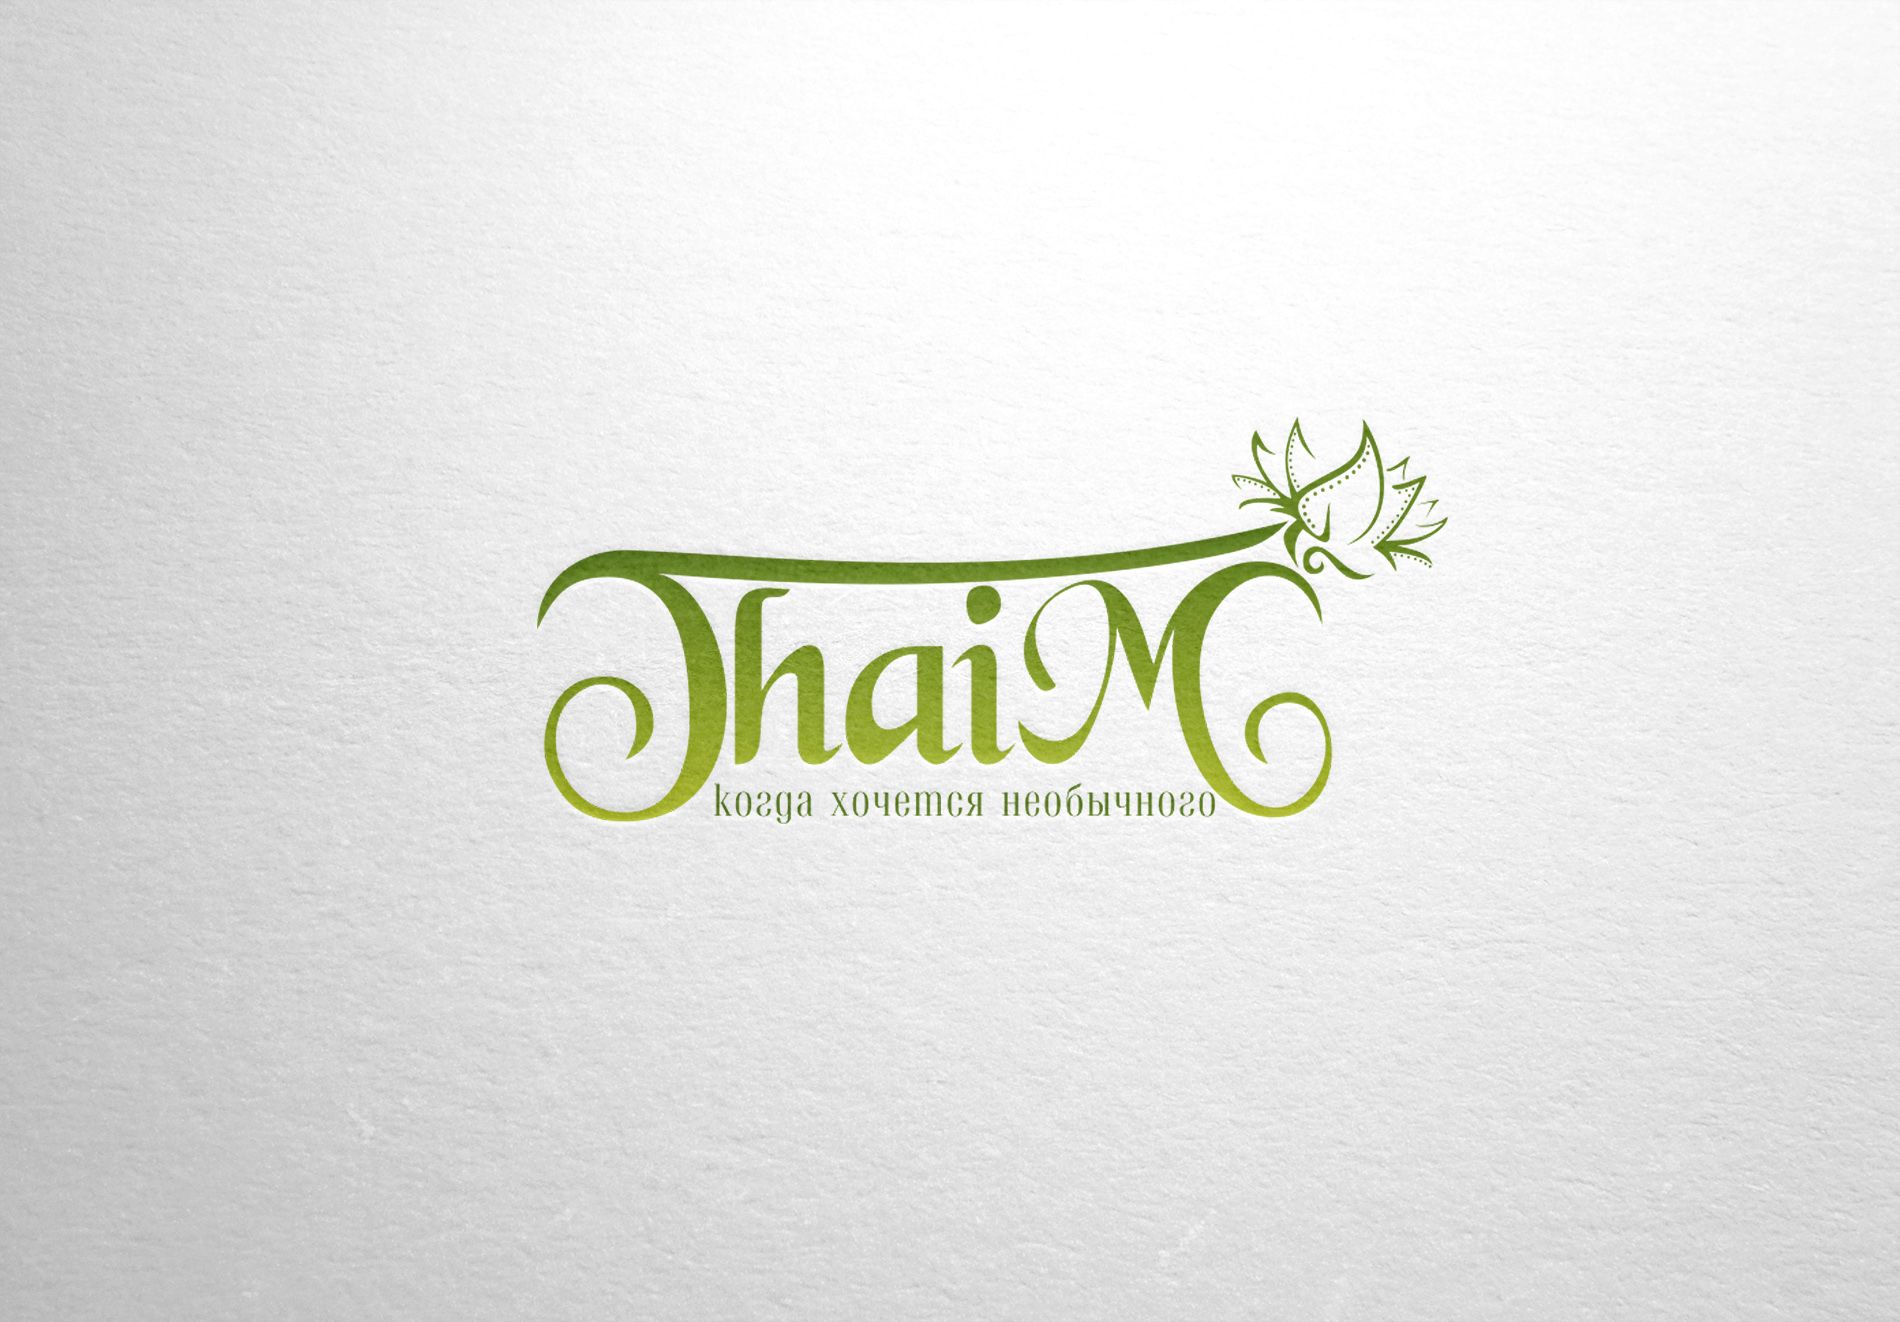 Логотип для салона Тайского массажа - дизайнер La_persona